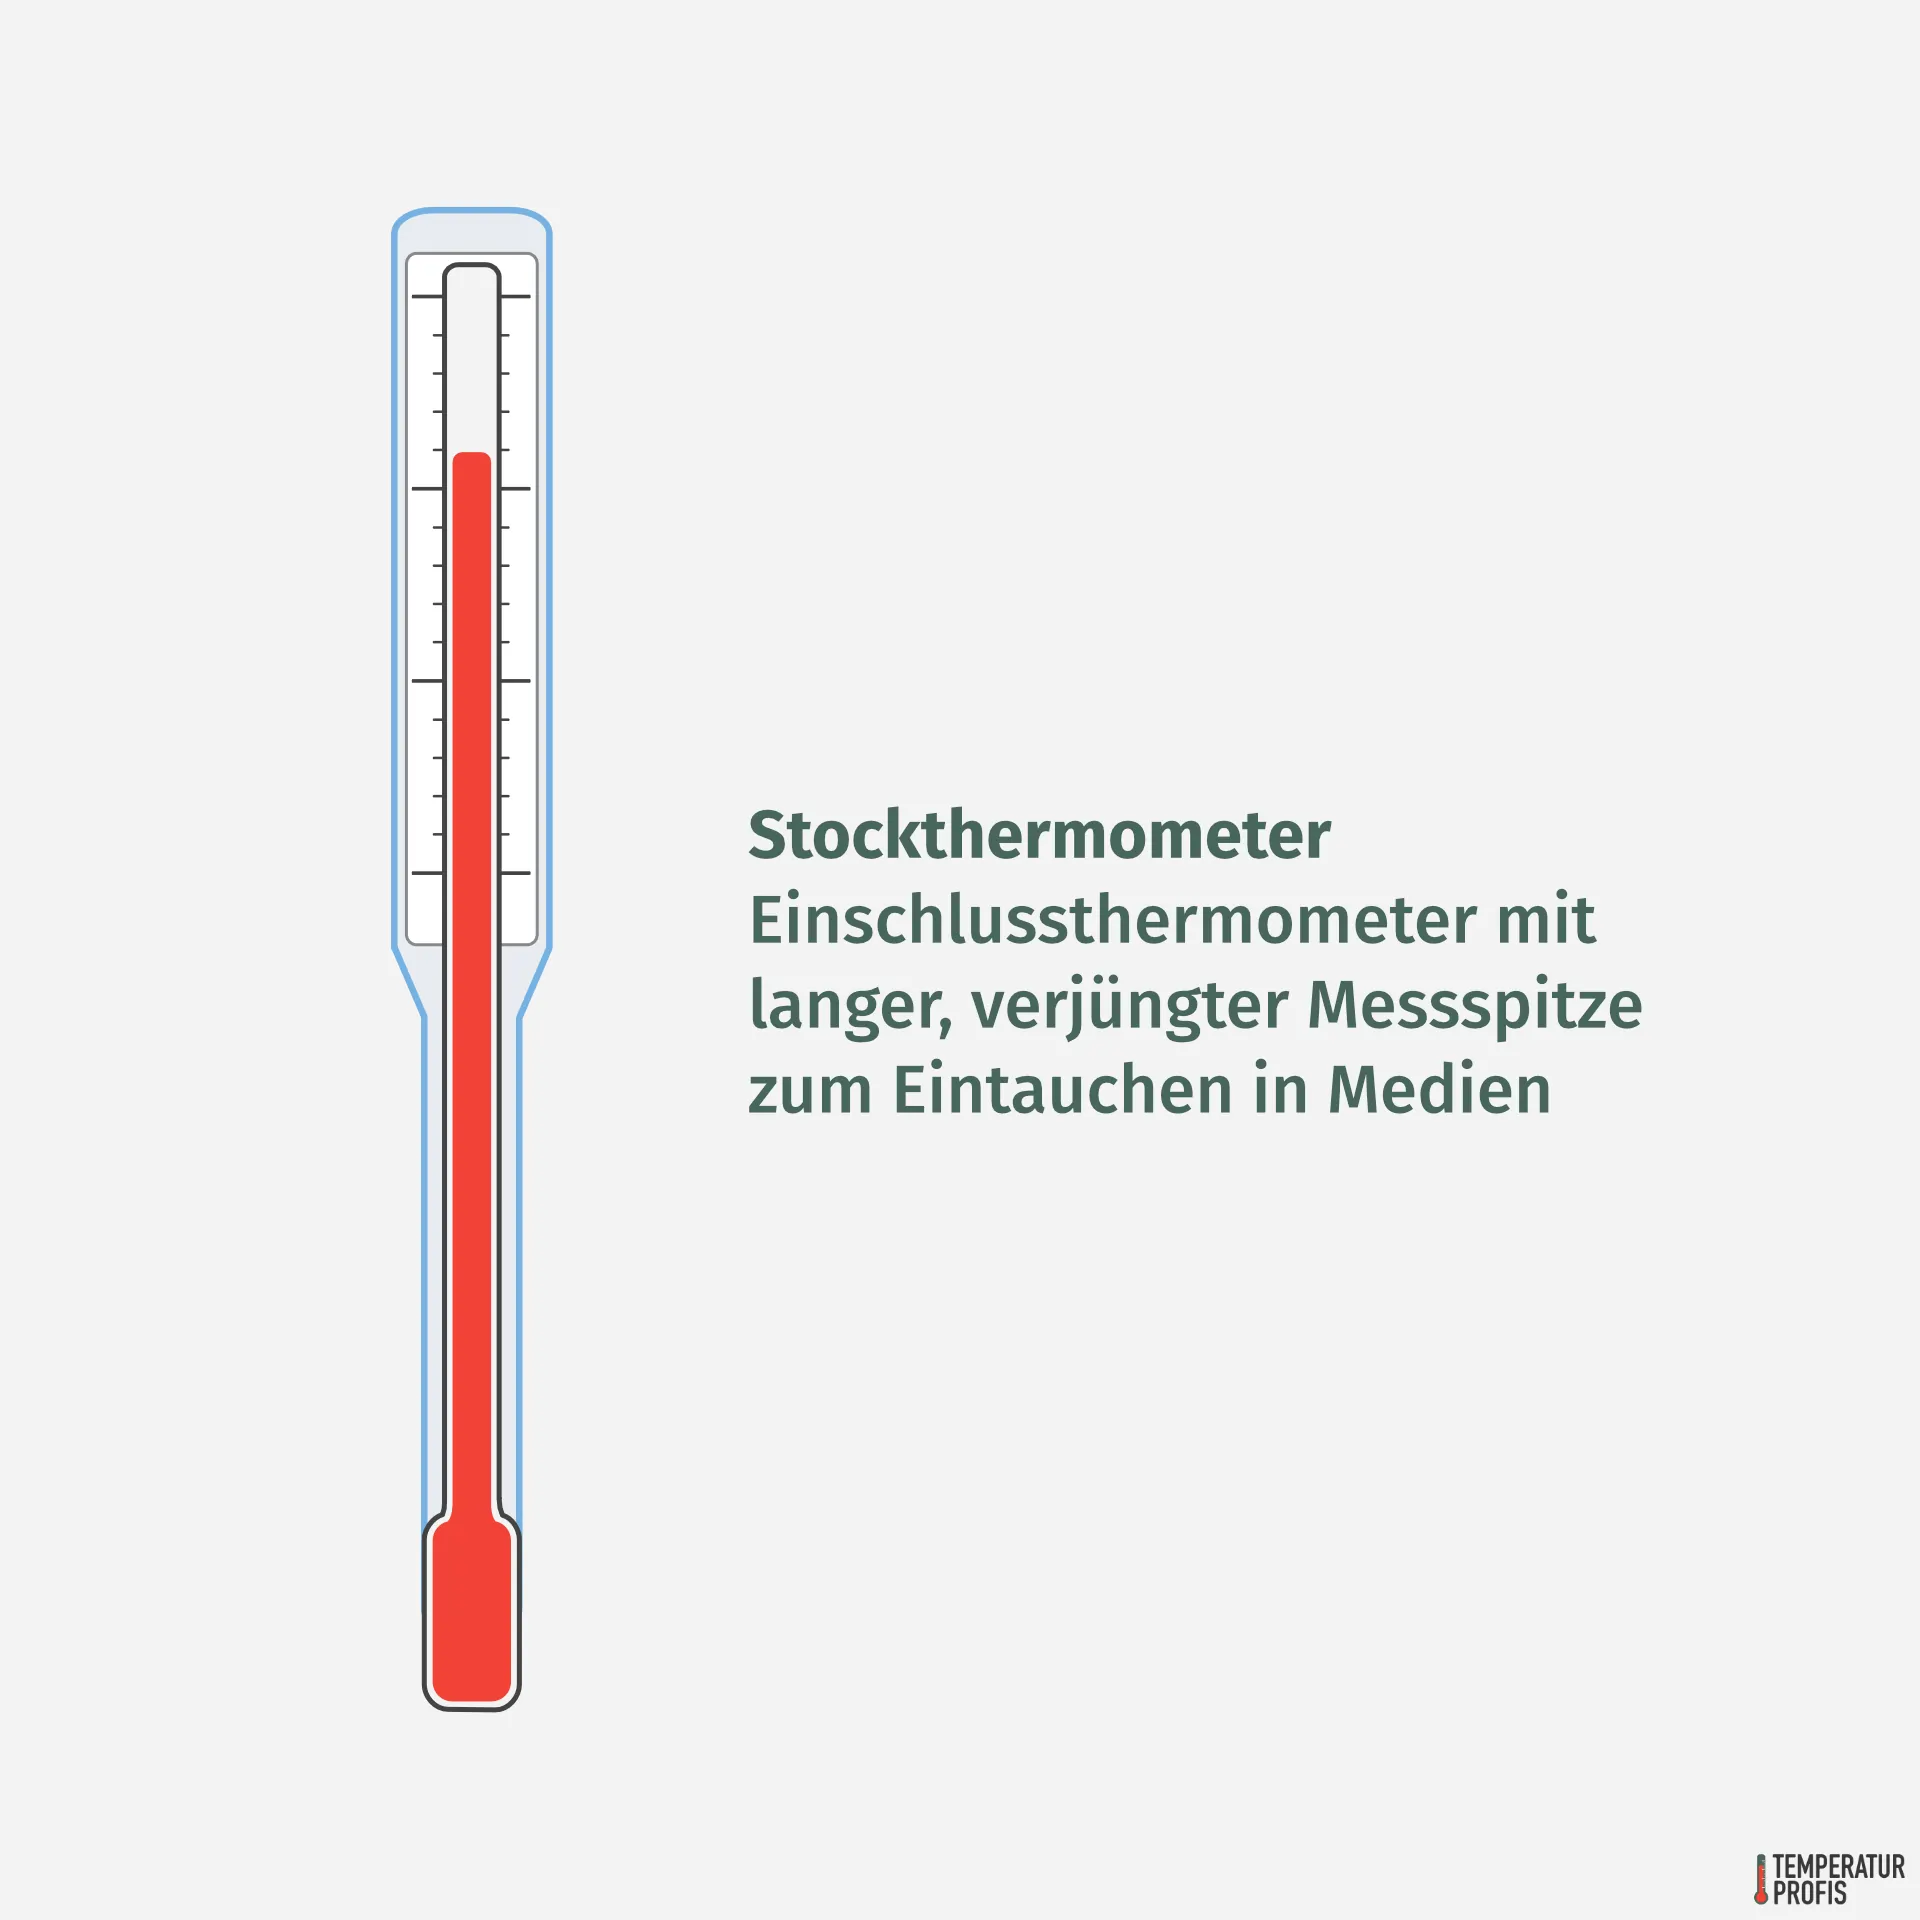 Thermometer Arten: Stockthermometer sind Einschlussthermometer mit langer, verjüngter Messspitze